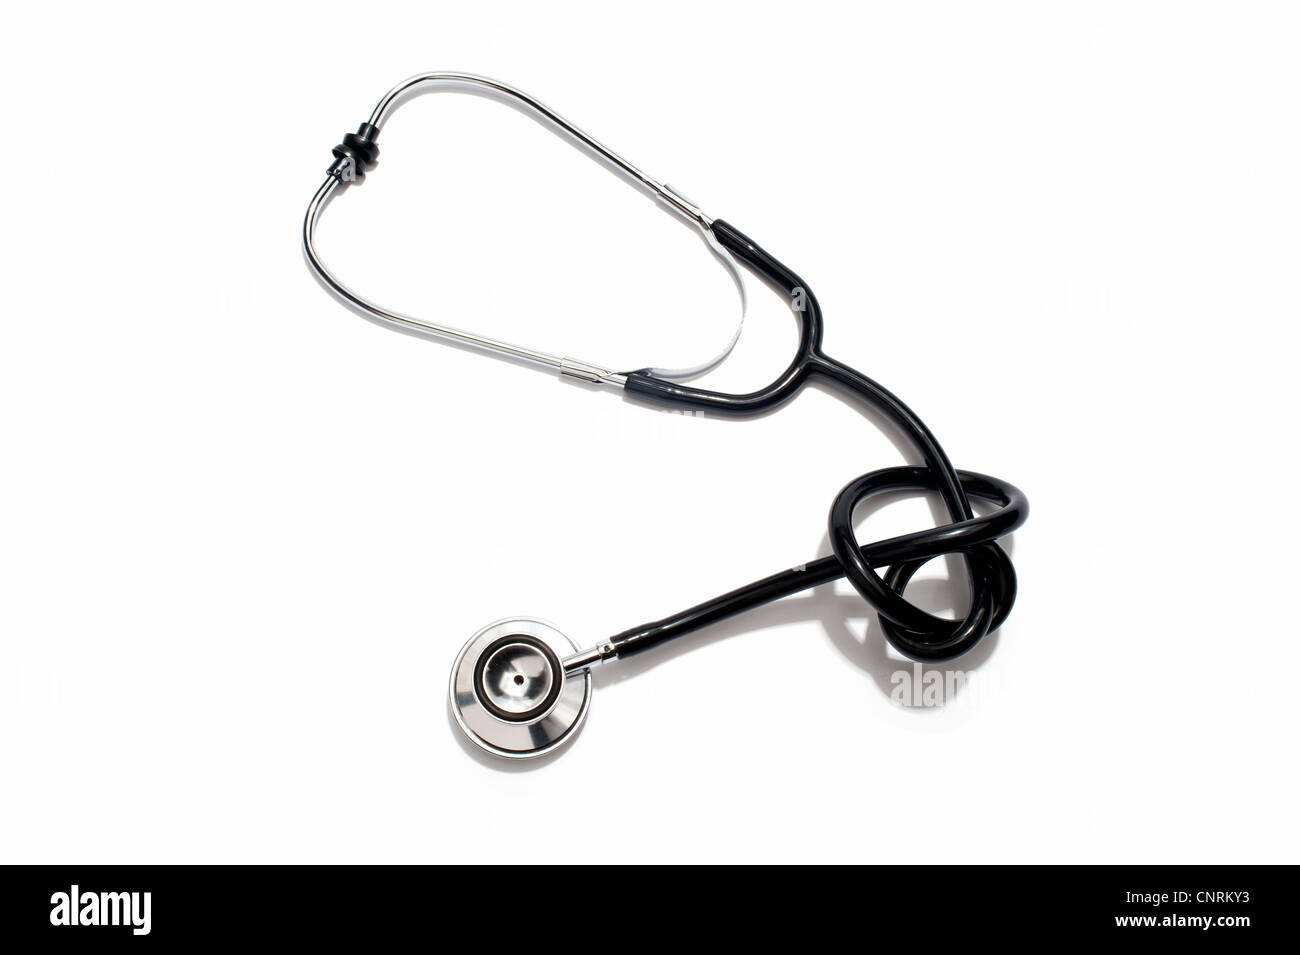 Ein Stethoskop in einen Knoten gebunden Stockfoto